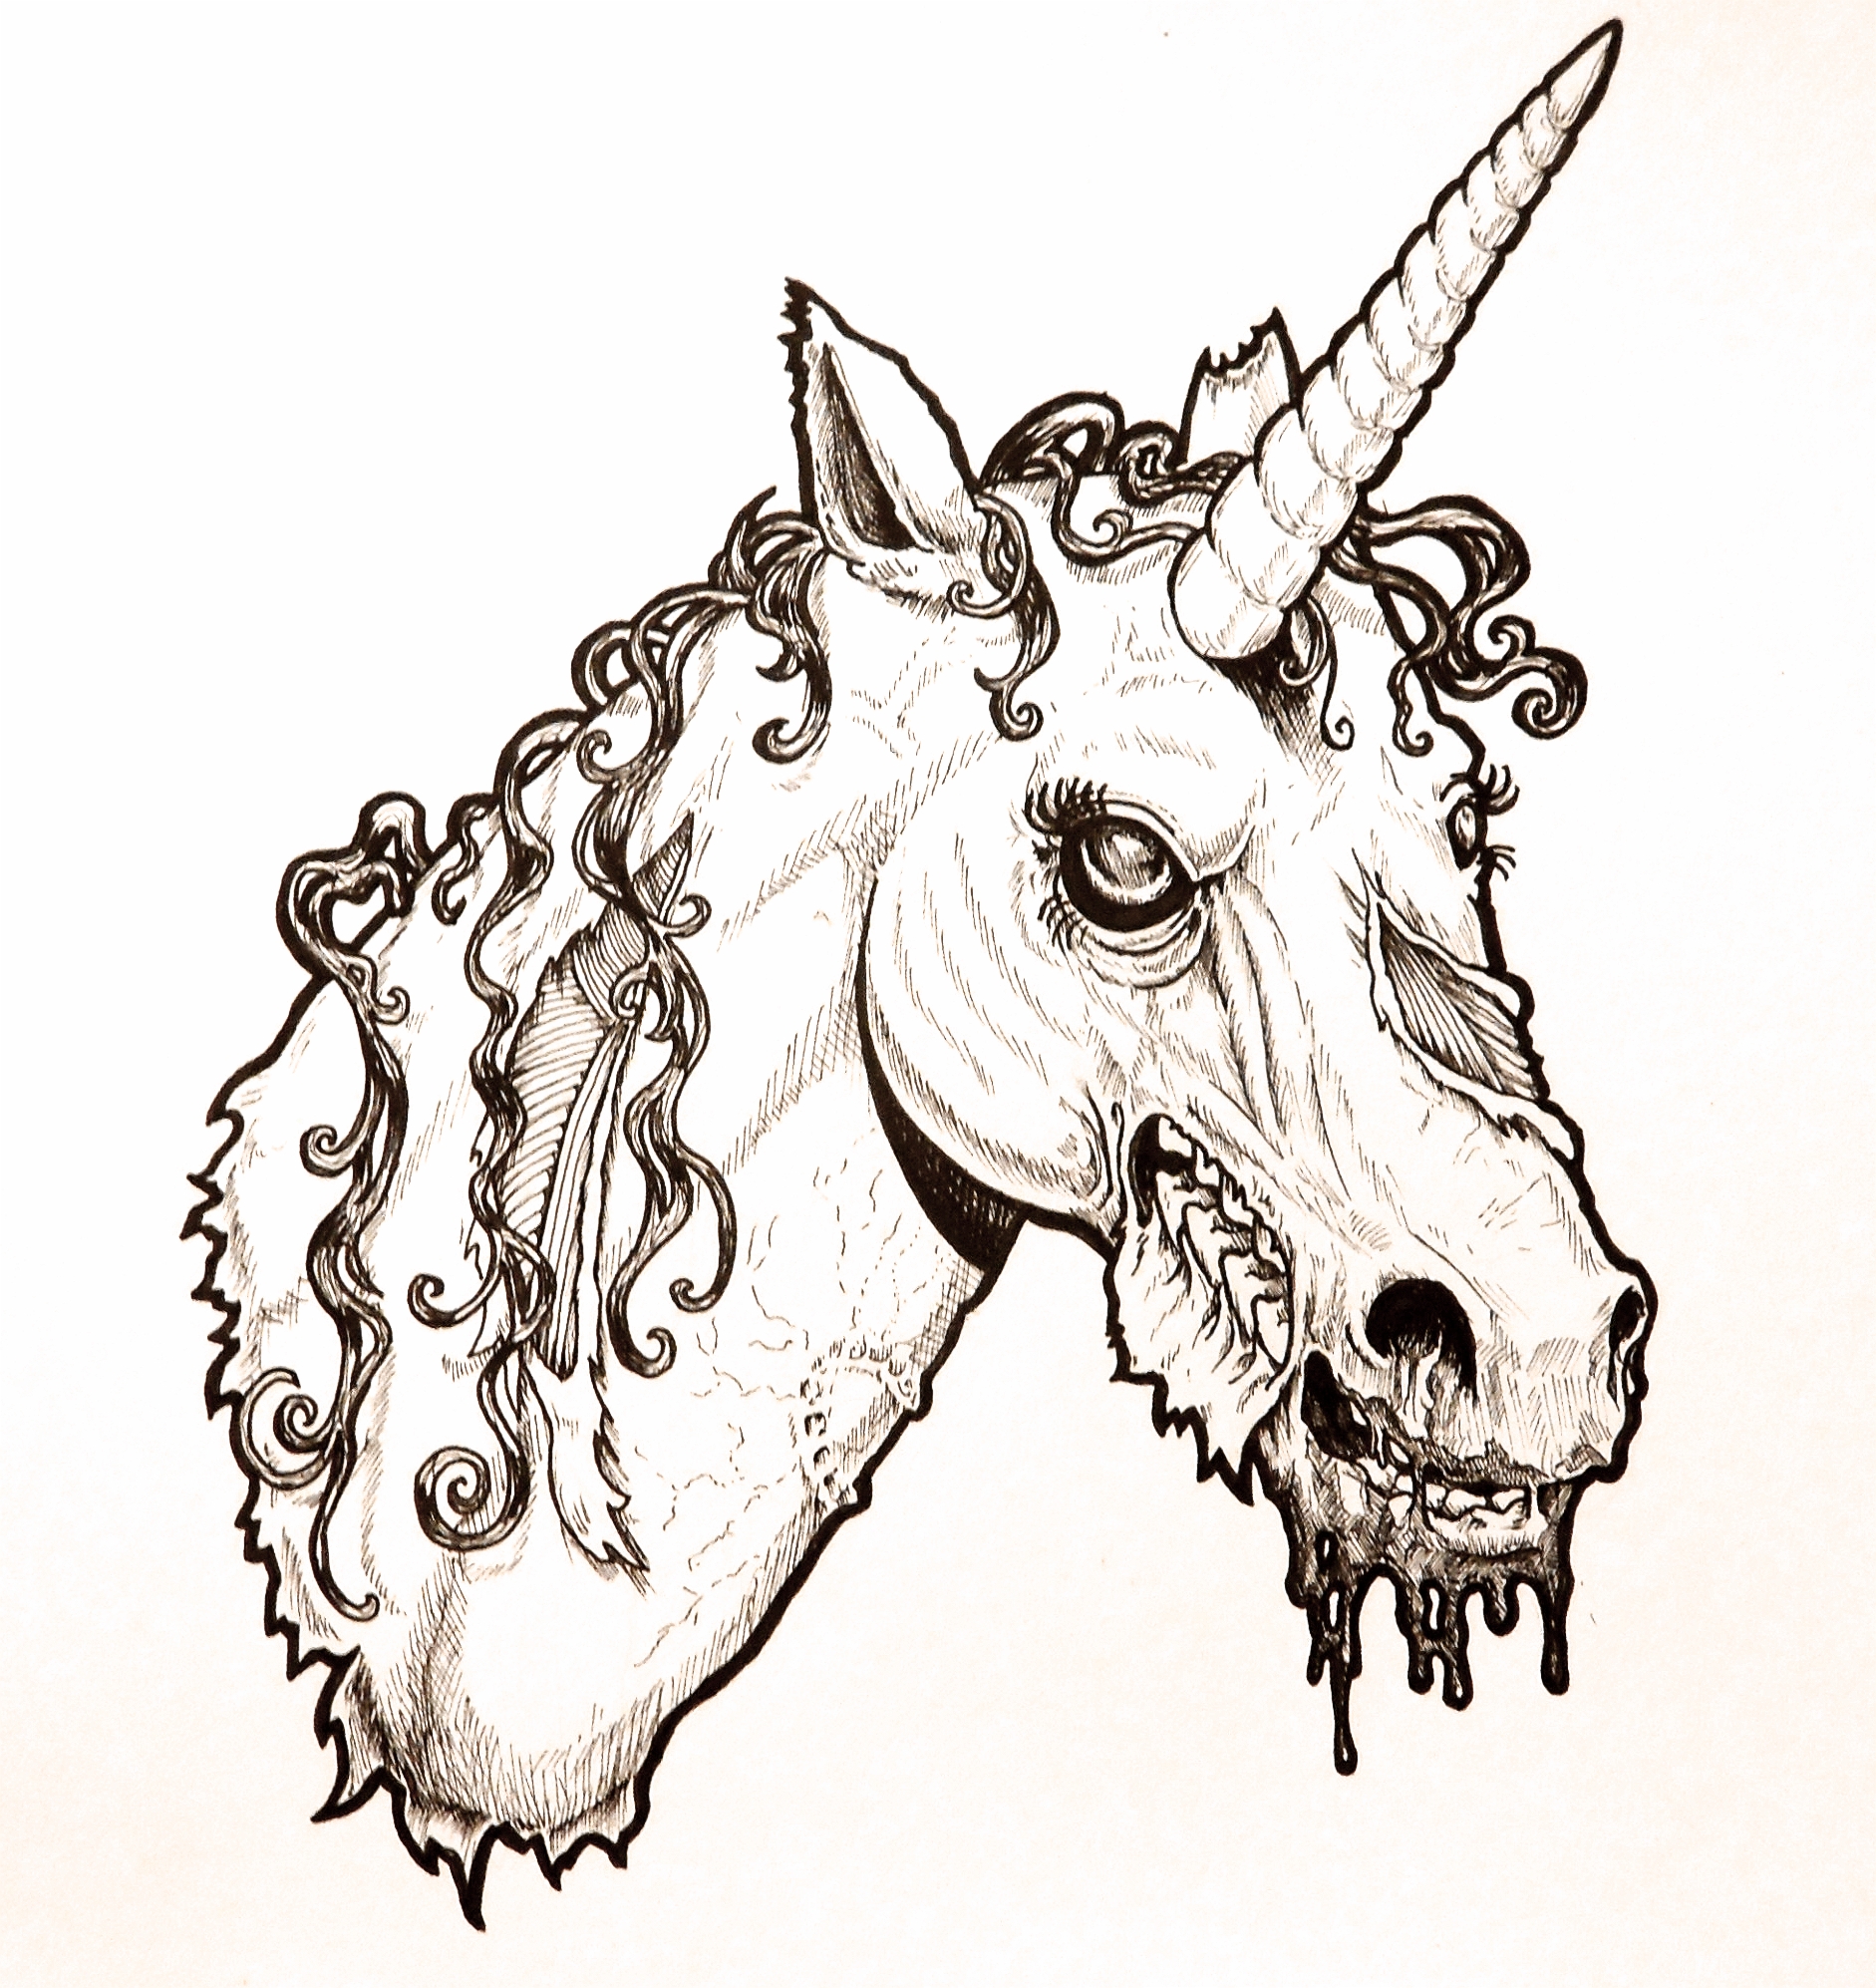 Zombie Unicorn Head by harperugby on DeviantArt